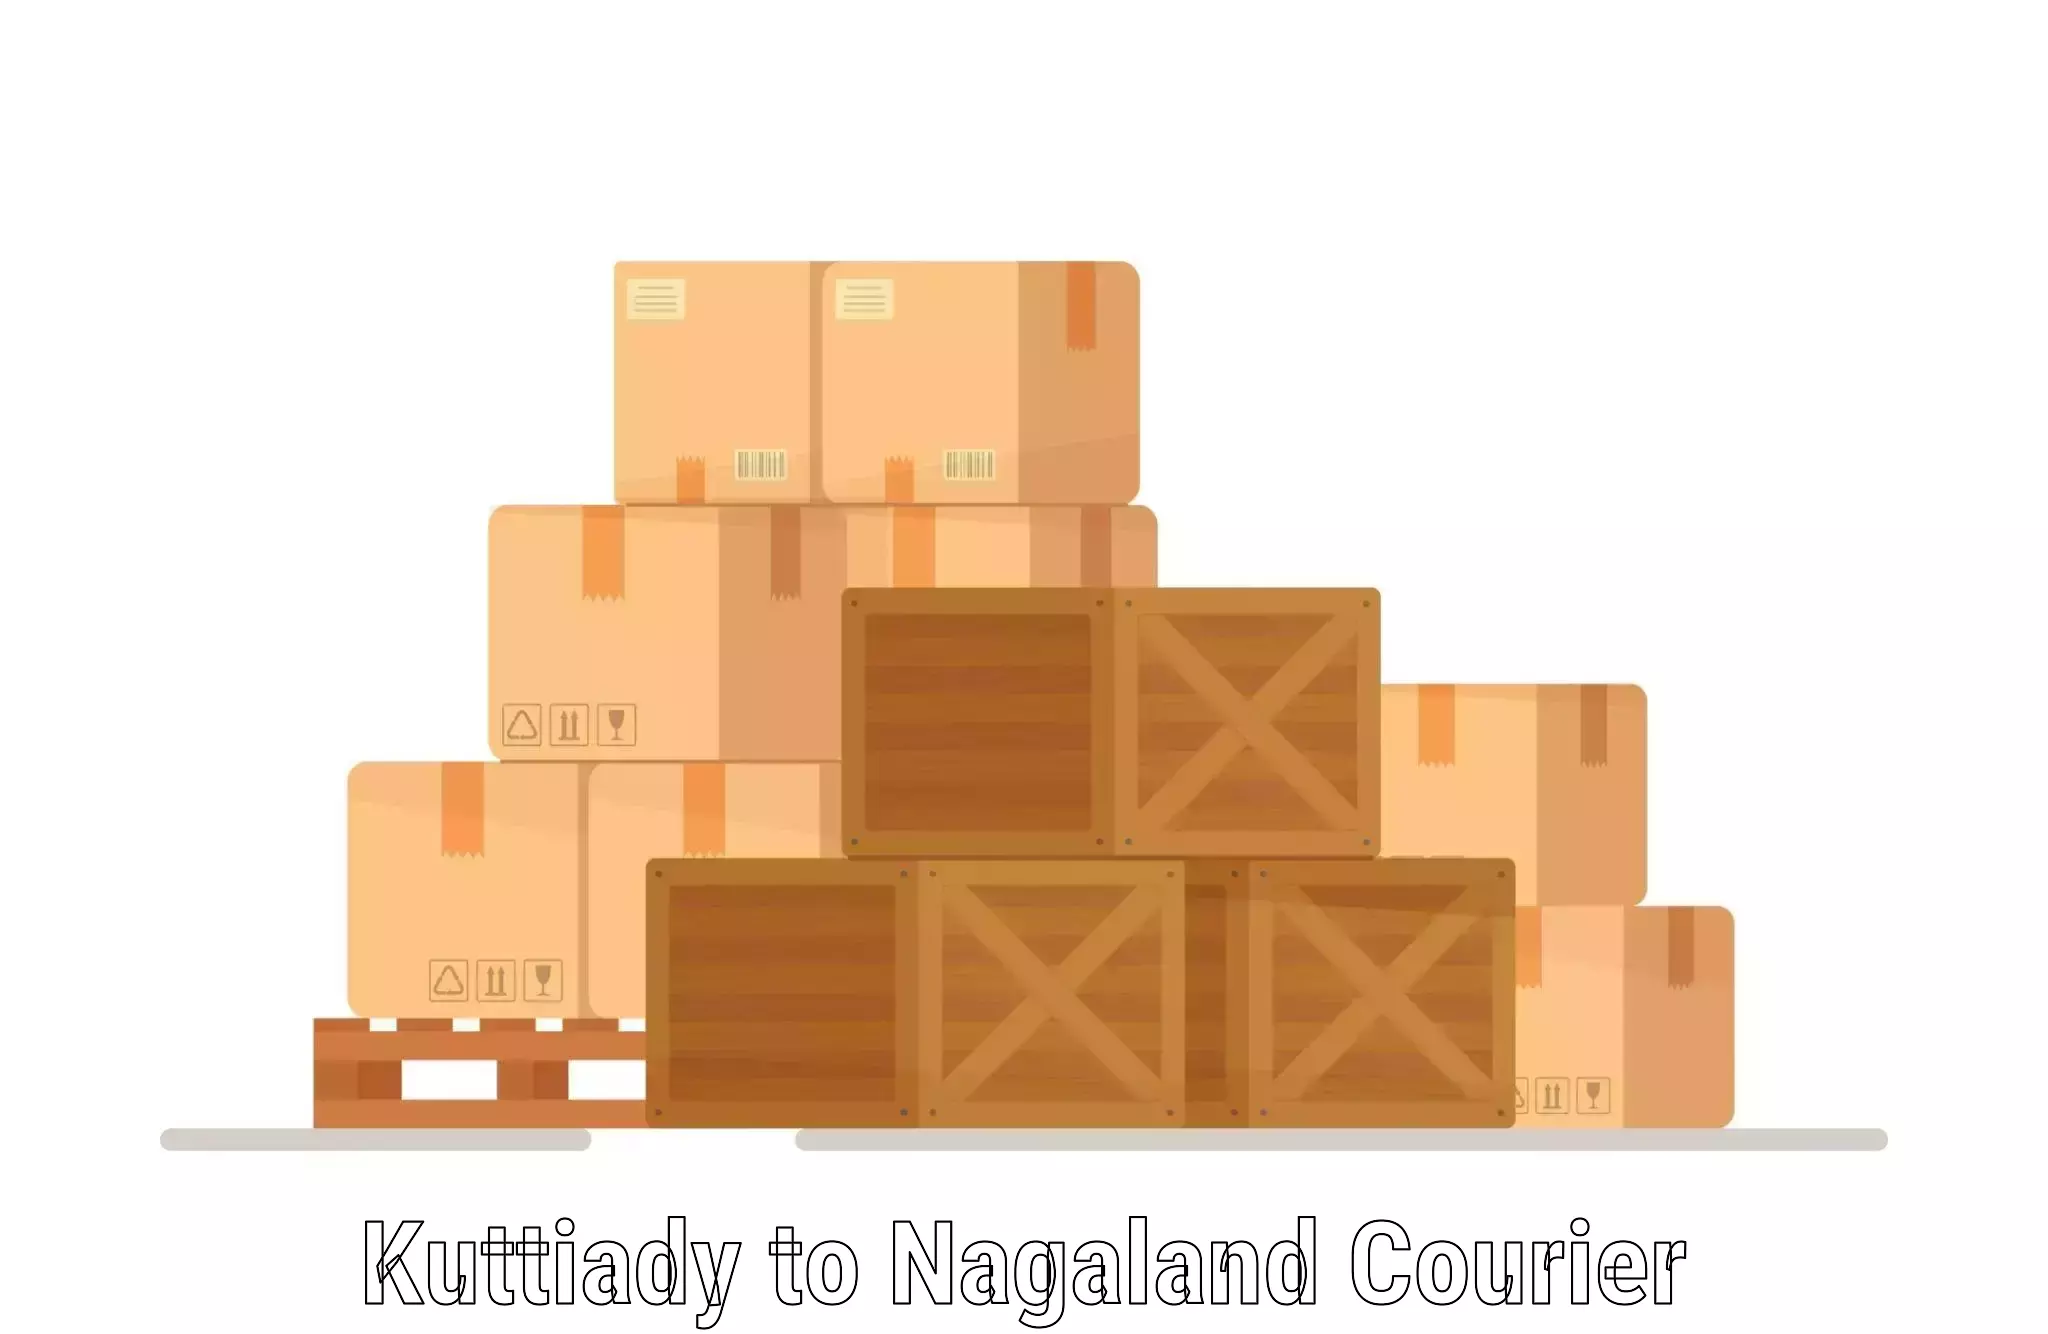 Customer-centric shipping Kuttiady to Dimapur